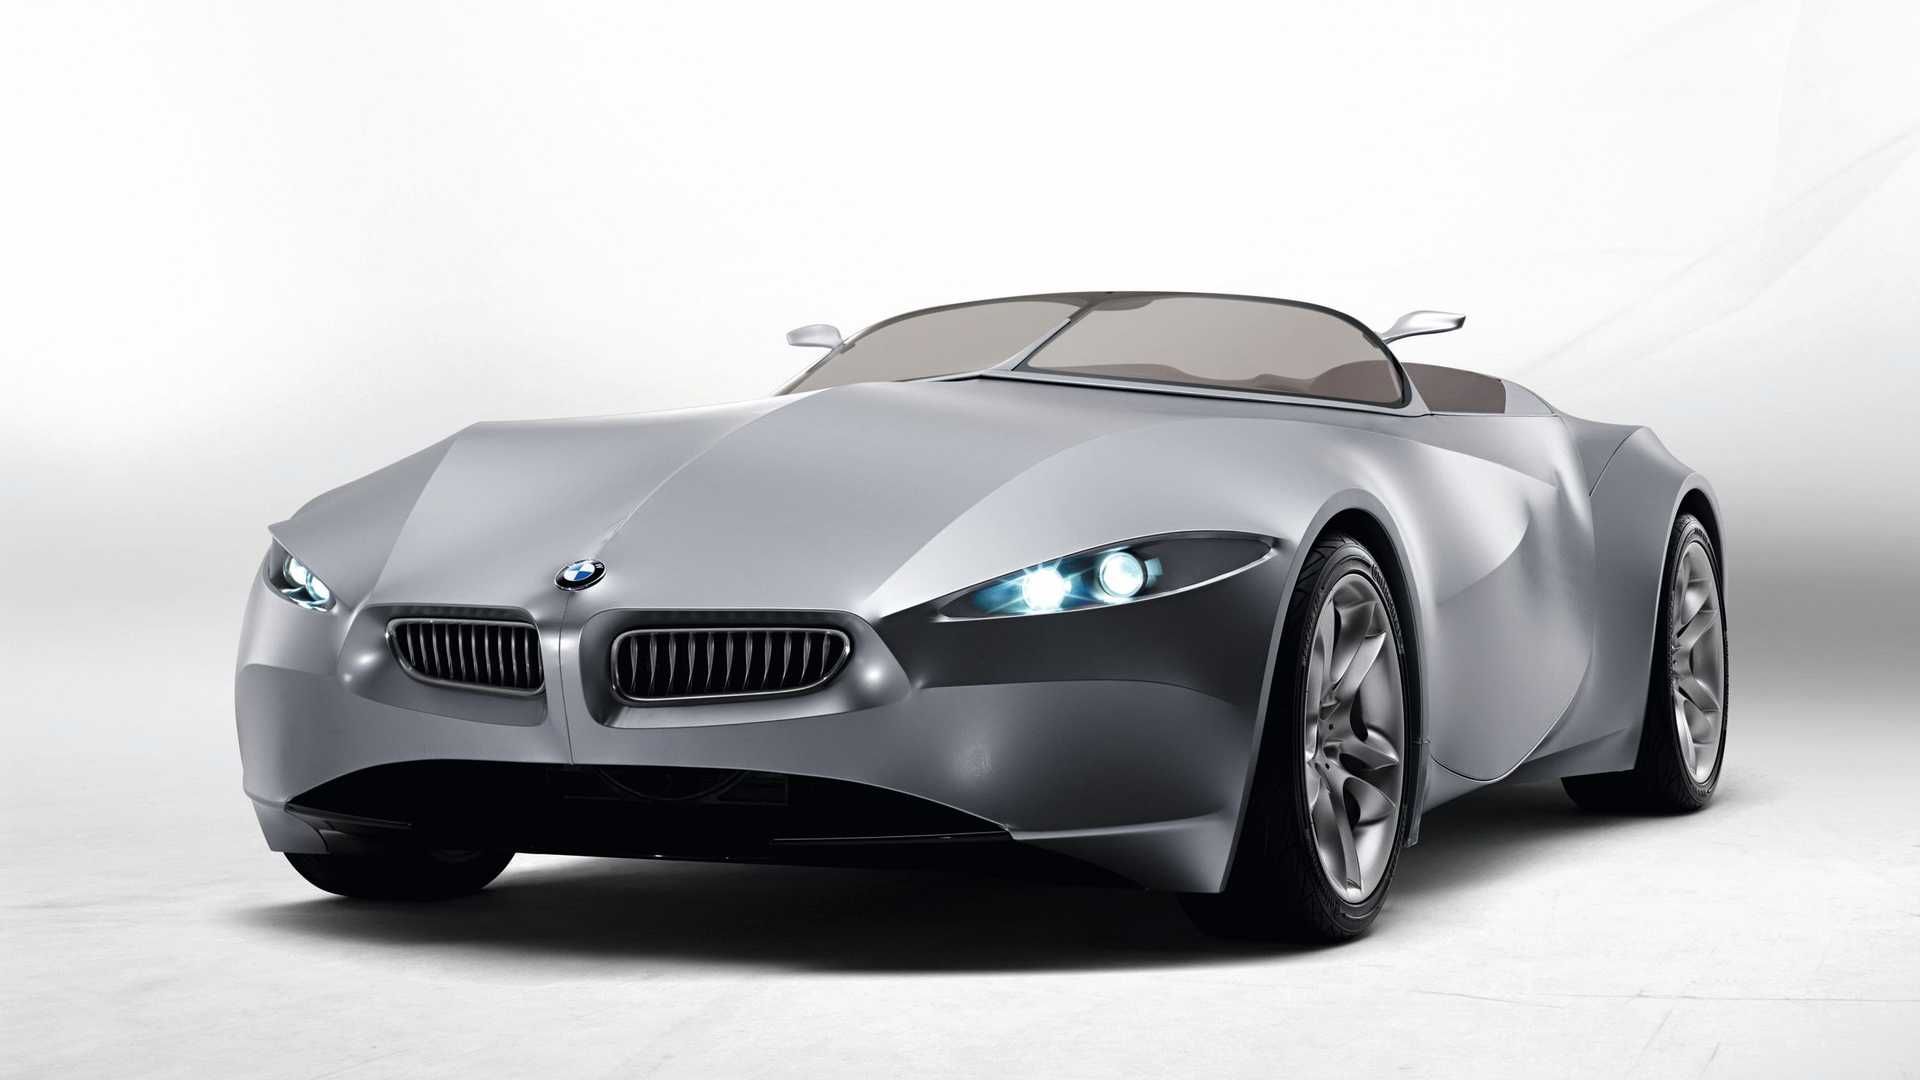 مرجع متخصصين ايران نماي سه چهارم خودروي مفهومي روباز بي ام و گينا / BMW GINA concept convertible با بدنه پارچه اي 